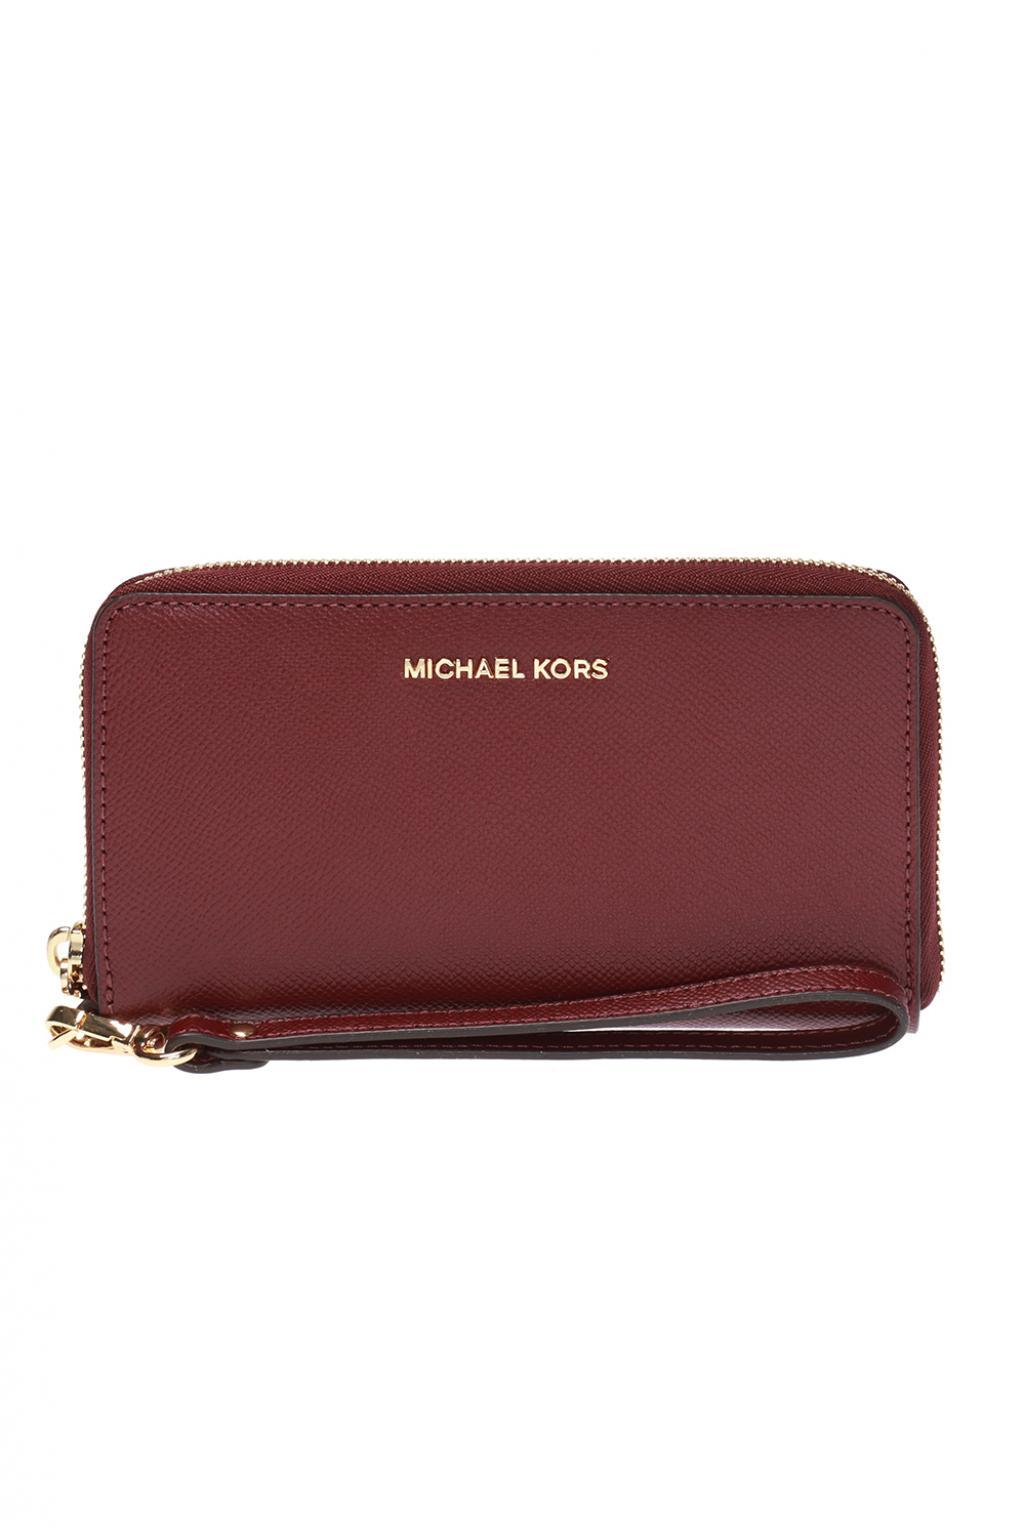 Top 59+ imagen michael kors wallet with strap